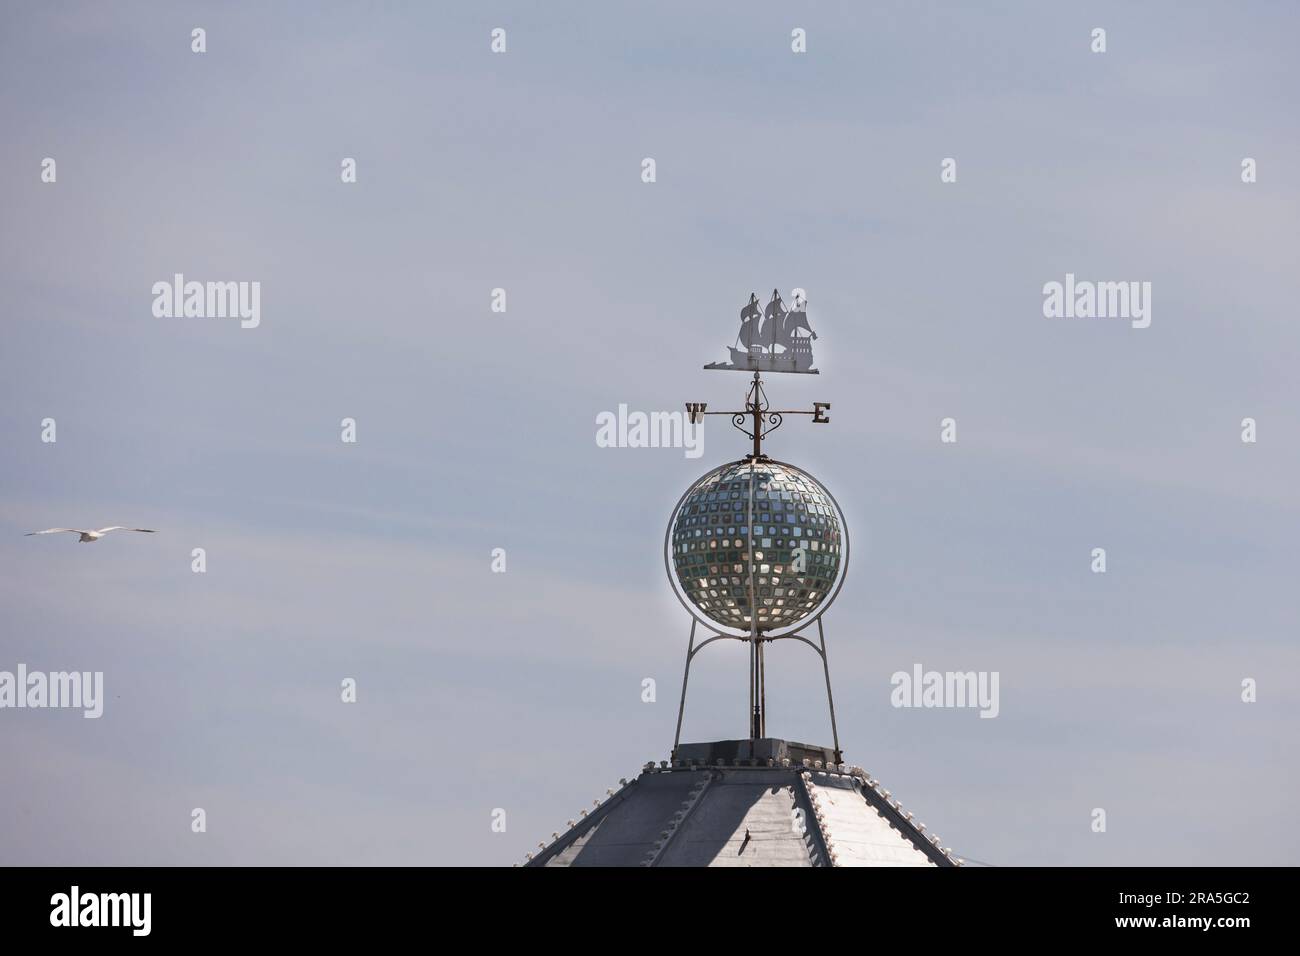 Bussola decorativa che mostra una nave in metallo e le indicazioni stradali su un tetto sul molo Palace, Brighton, Regno Unito Foto Stock